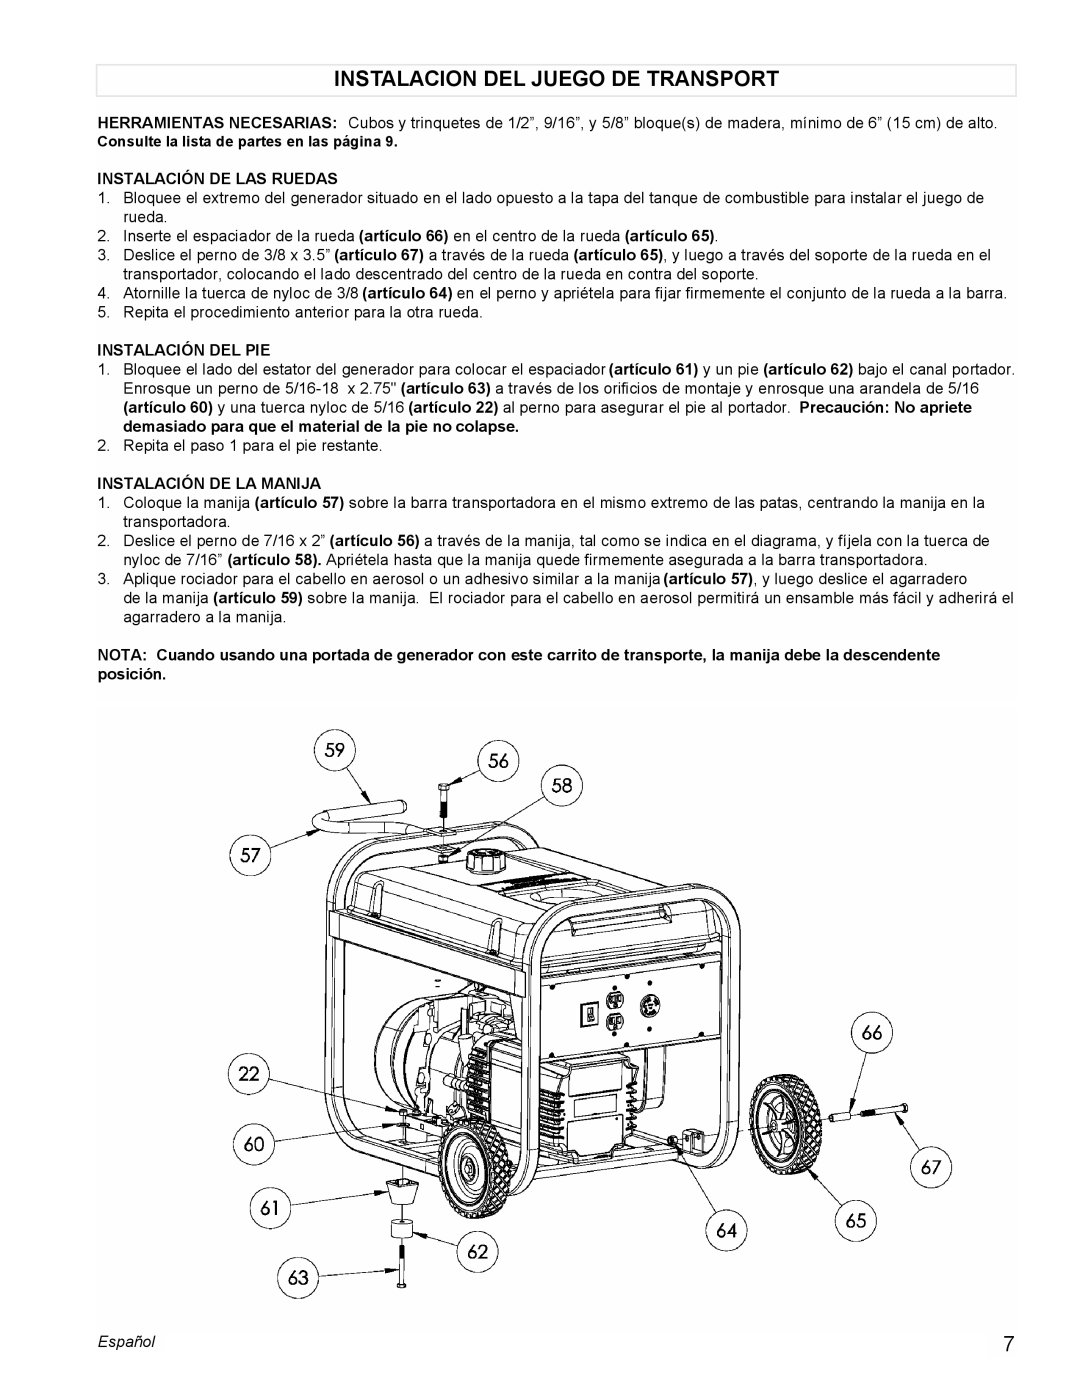 Powermate PC0545006 manual Instalacion Del Juego De Transport, Instalación De Las Ruedas, Instalación Del Pie, Español 